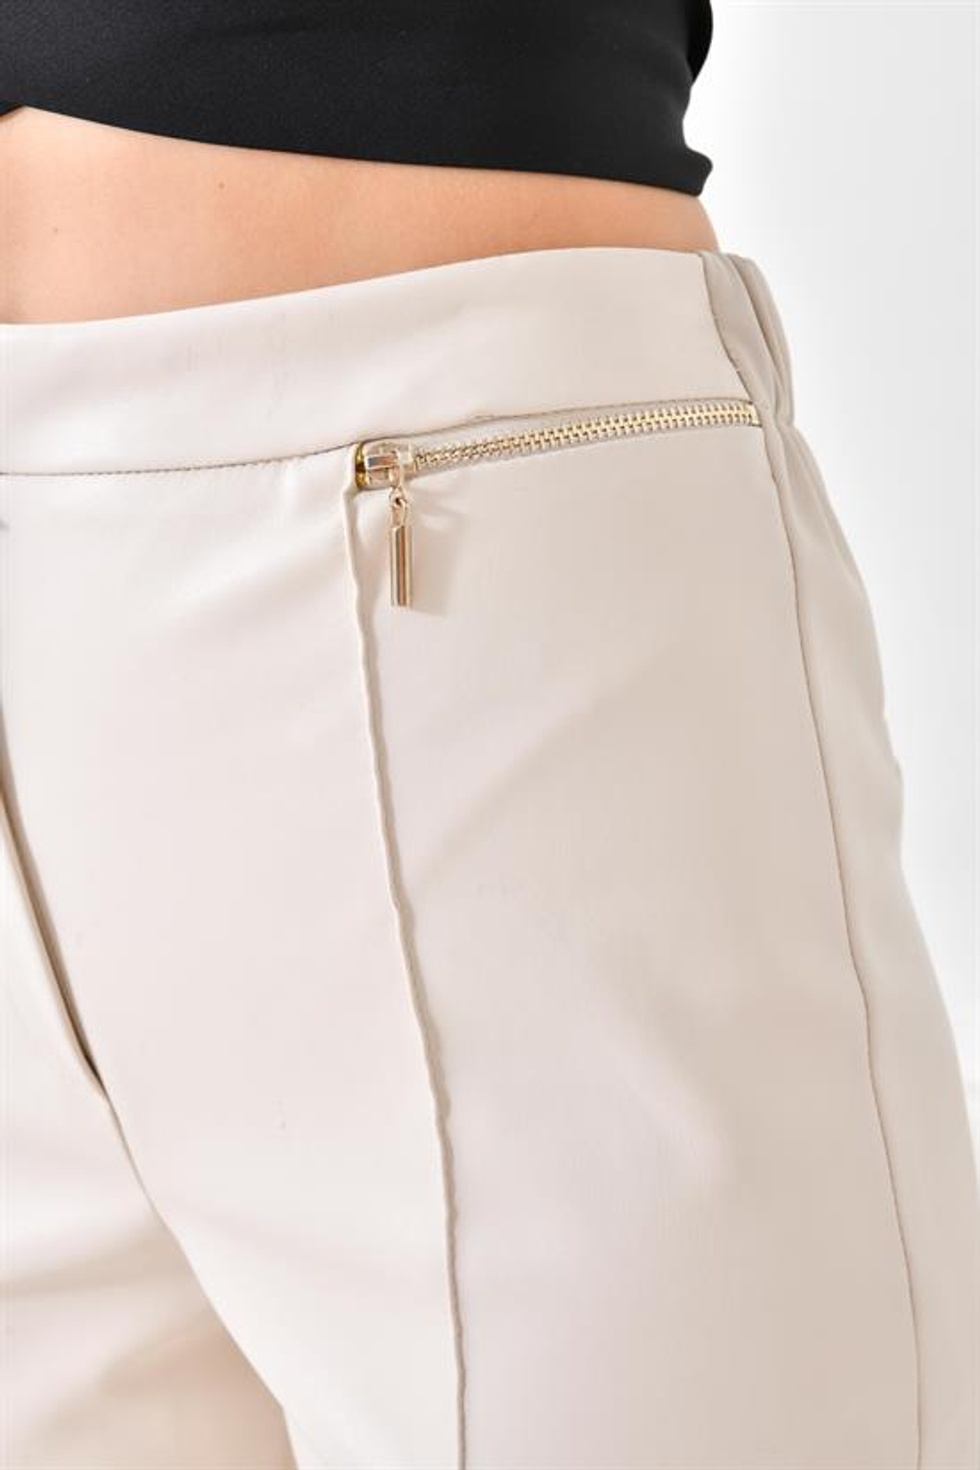 Ftz Women Kadın Deri Pantolon Taş